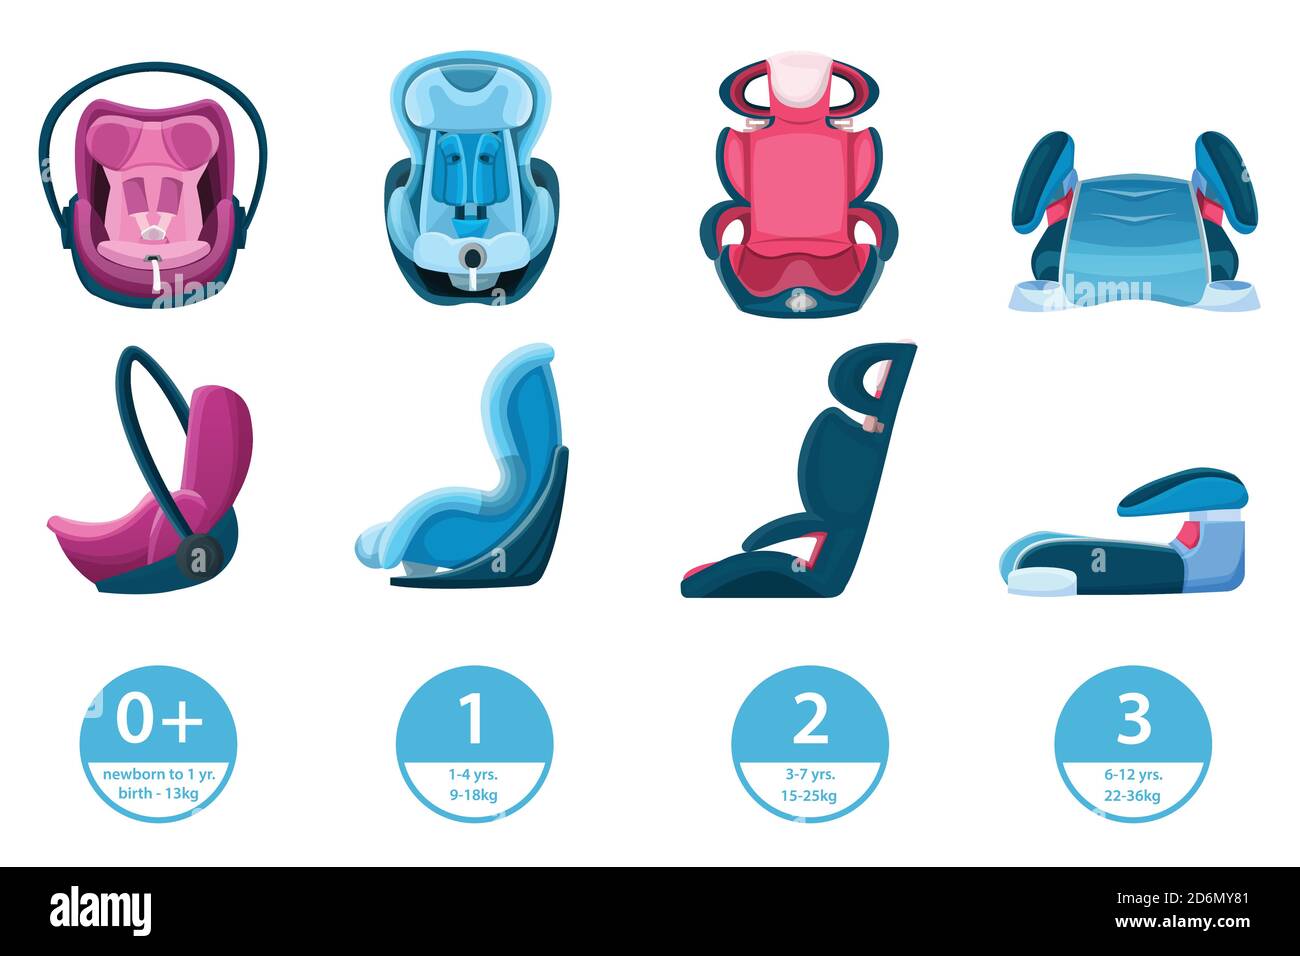 Kindersitze für Kinder, Kleinkinder und Neugeborene. Vektor isolierte Cartoon-Symbole. Sicherheitsfahrzeug Reisekonzept. Stock Vektor